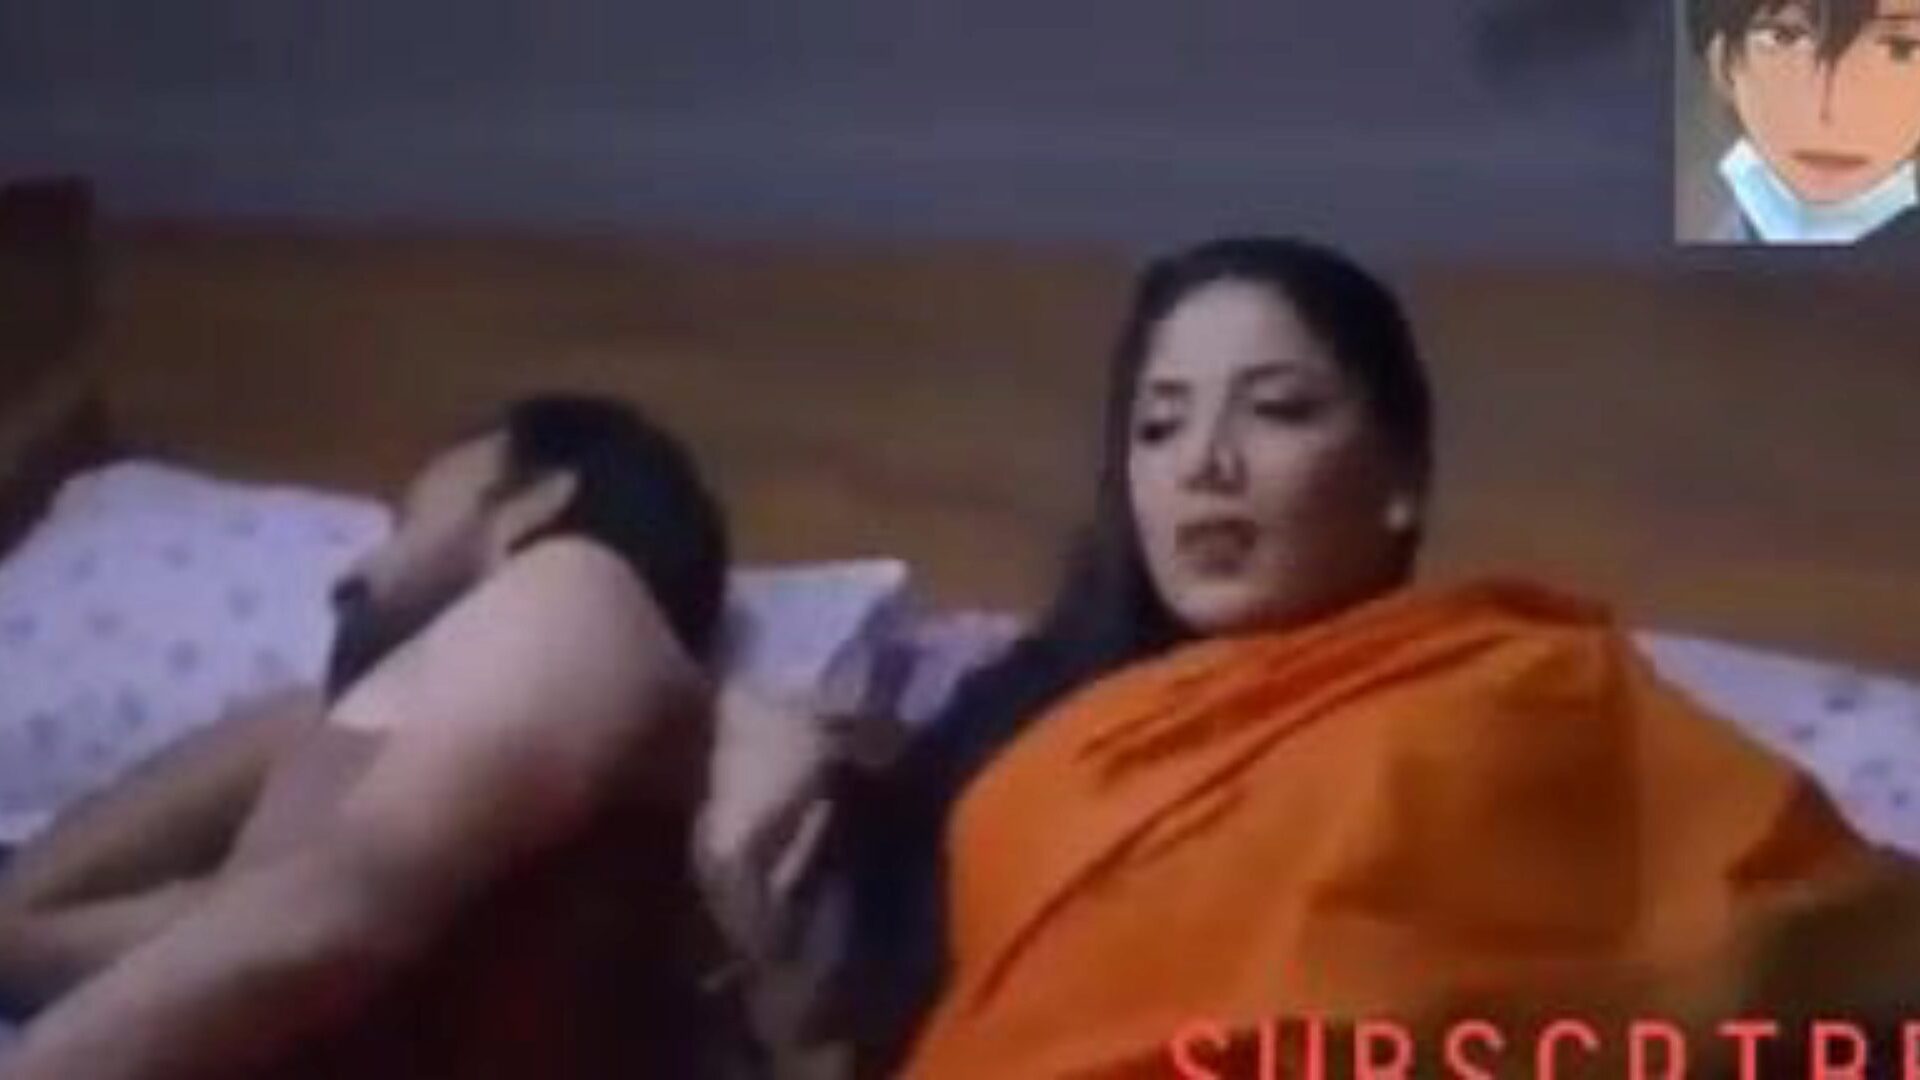 sexe avec bhabhi: vidéo porno indienne gratuite b3 - xhamster regarder le sexe avec le tube bhabhi clip orgie gratuitement sur xhamster, avec la plus grande collection de scènes de vidéos porno gratuites de bhabhi indien et de sexe xnxx